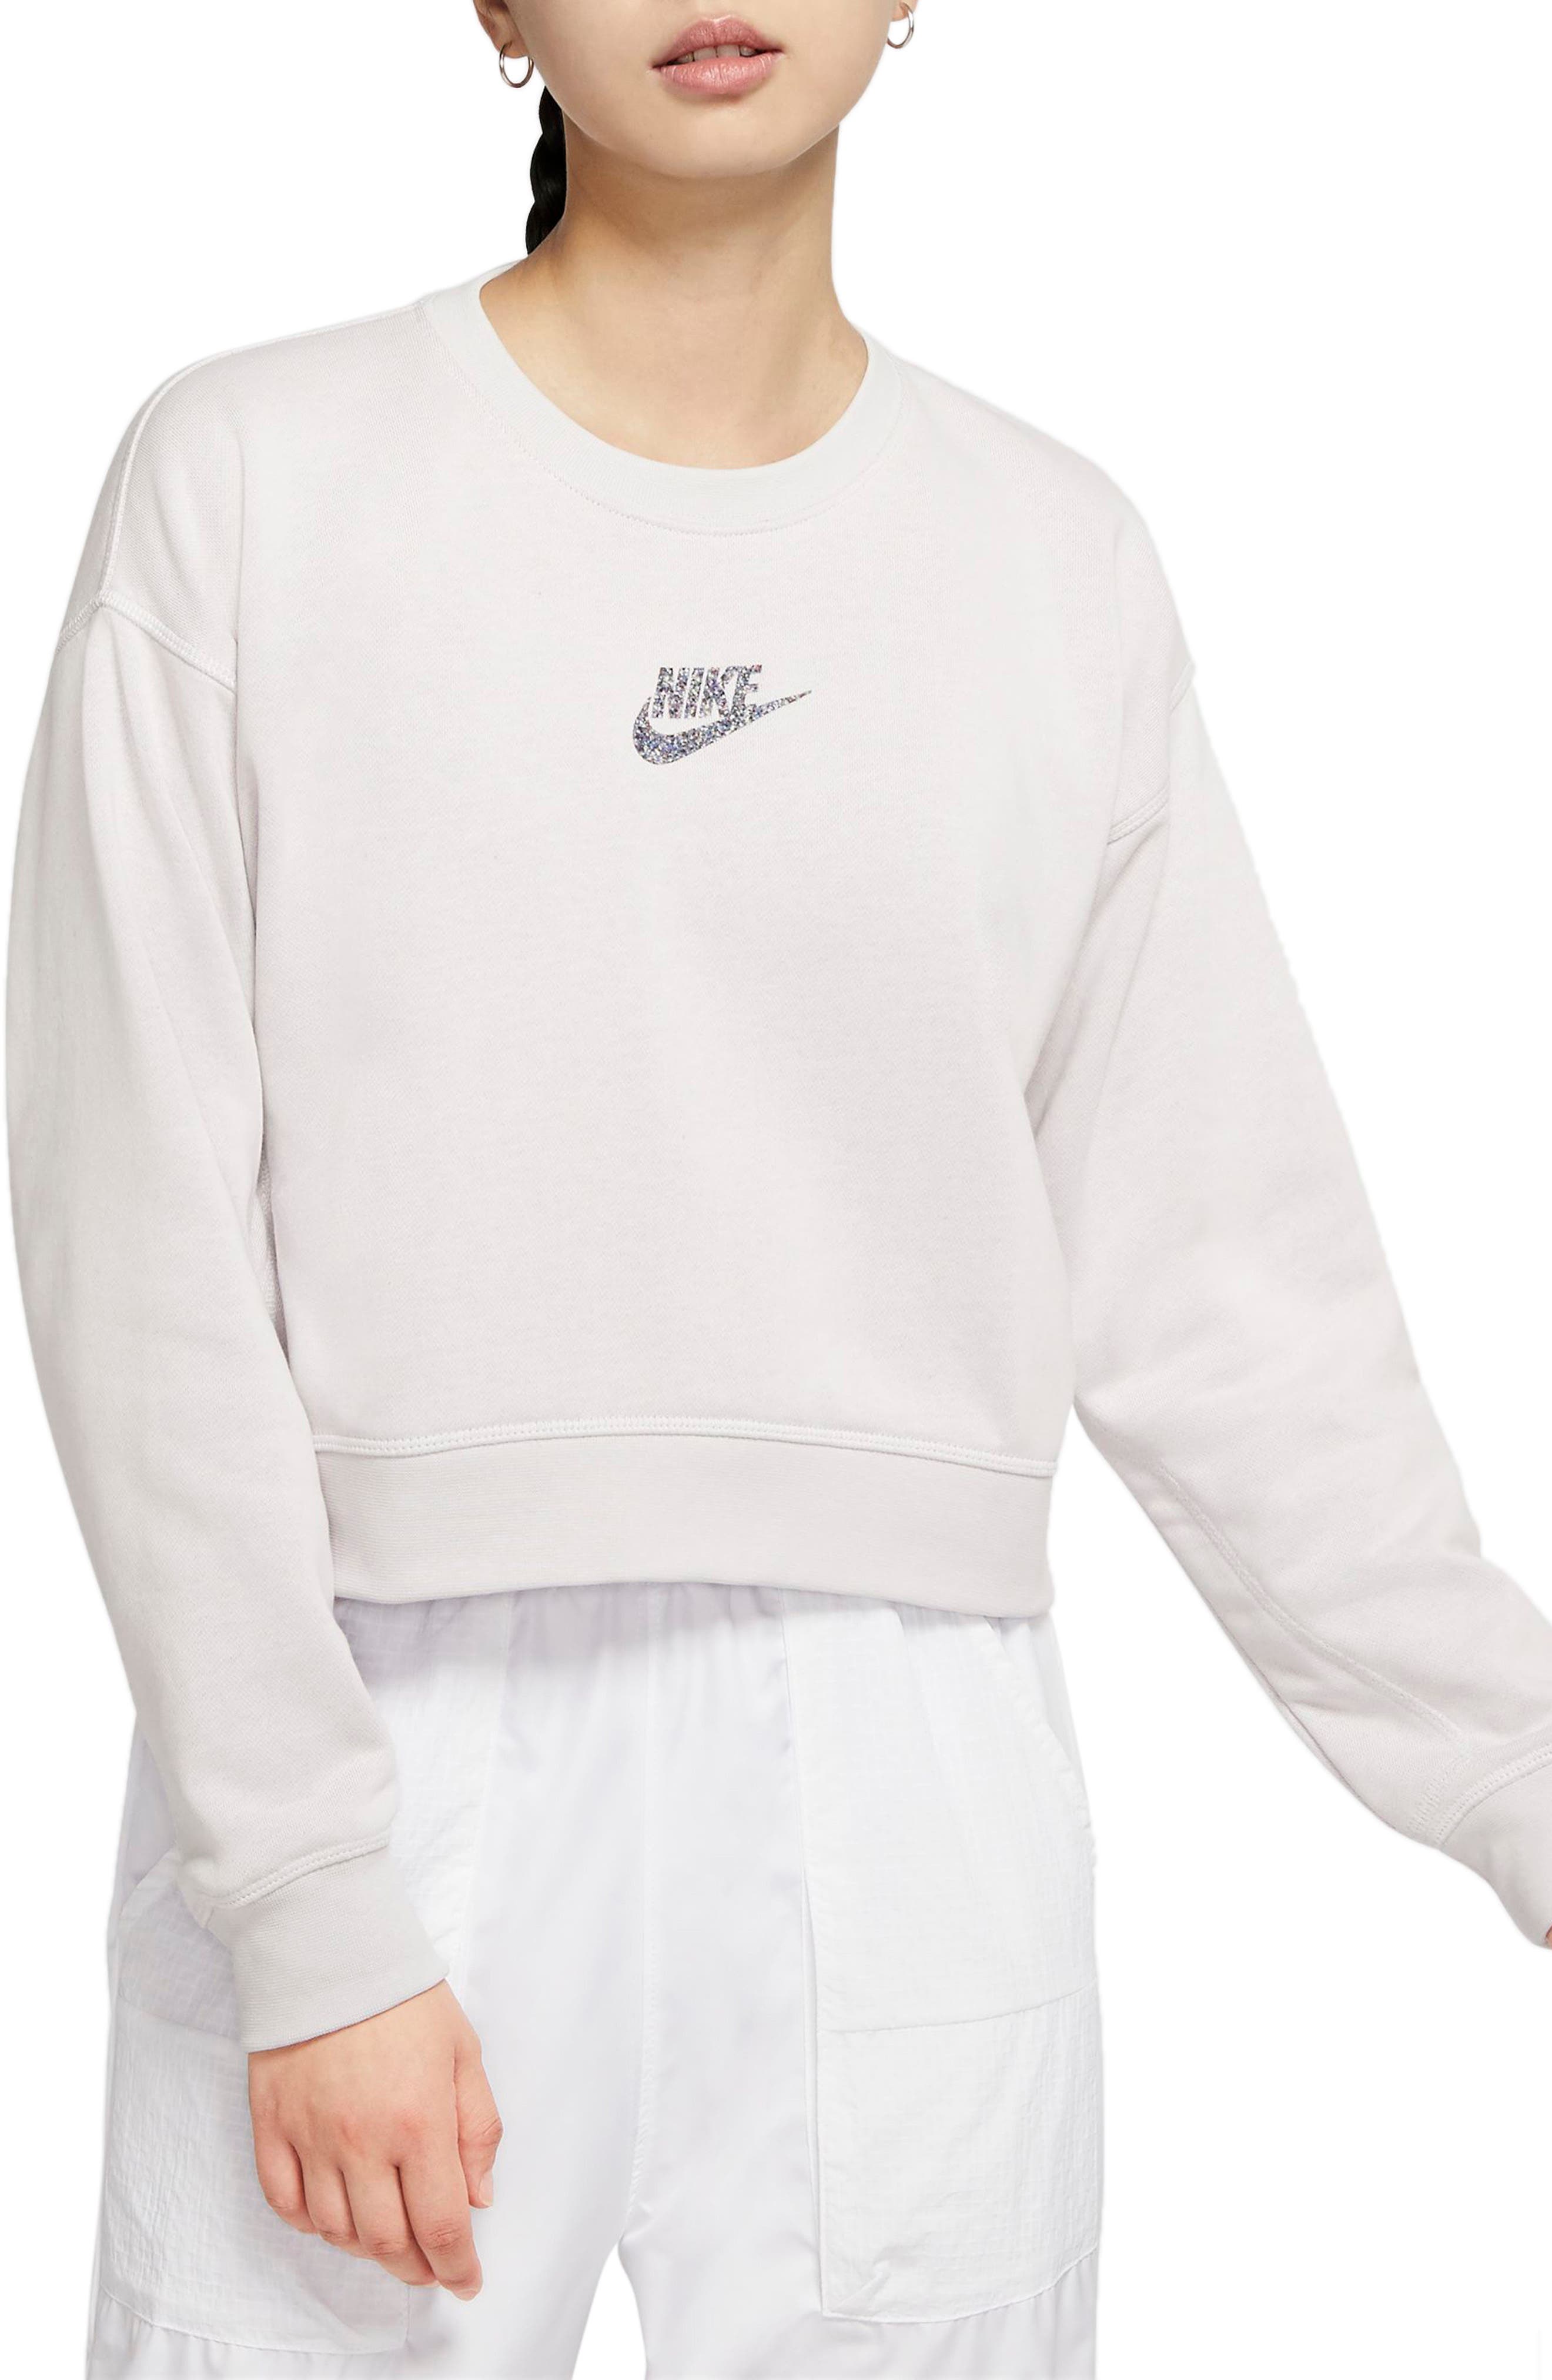 nike women's white sweatshirt